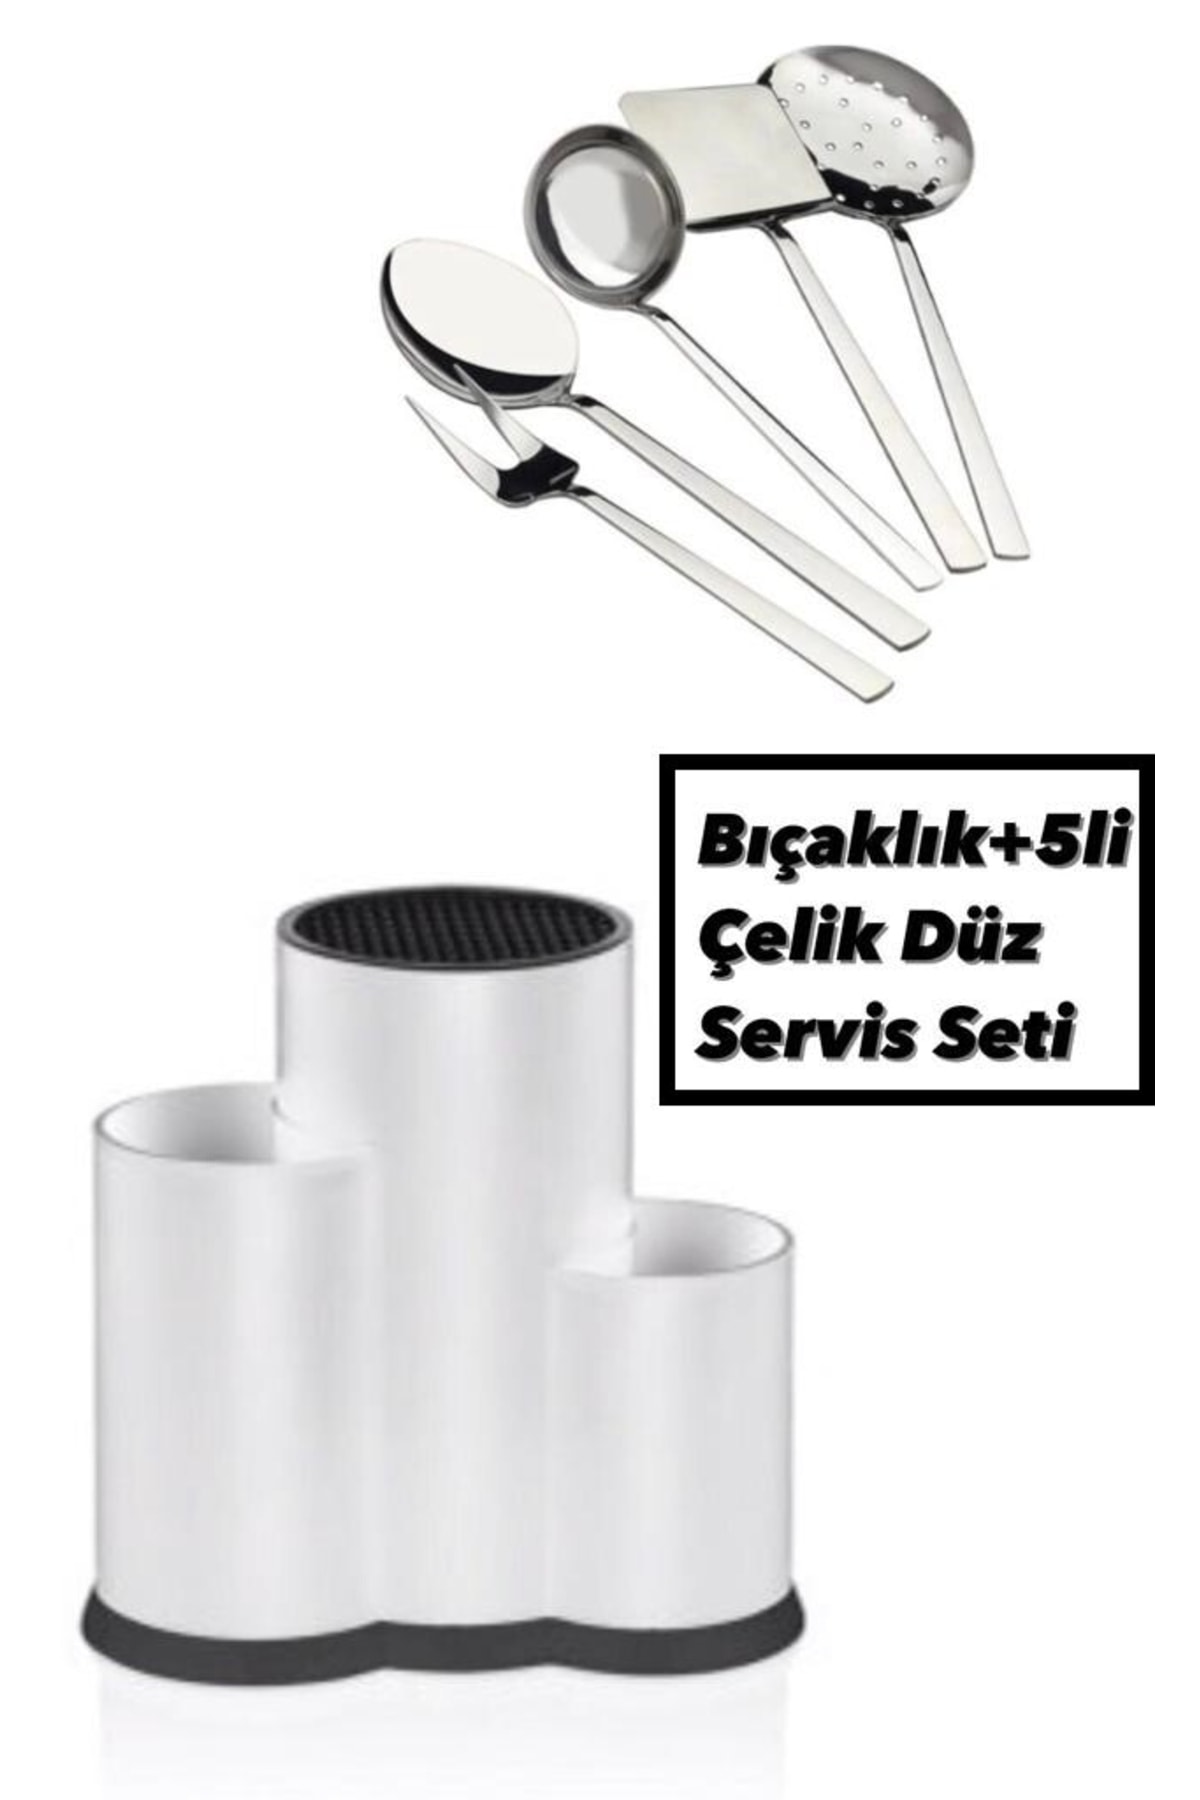 Bayev Beyaz Tezgah Üstü Bölmeli Kaşık Bıçak Standı + 5 Li Çelik Düz Servis Seti Kepçe Kevgir Takımı